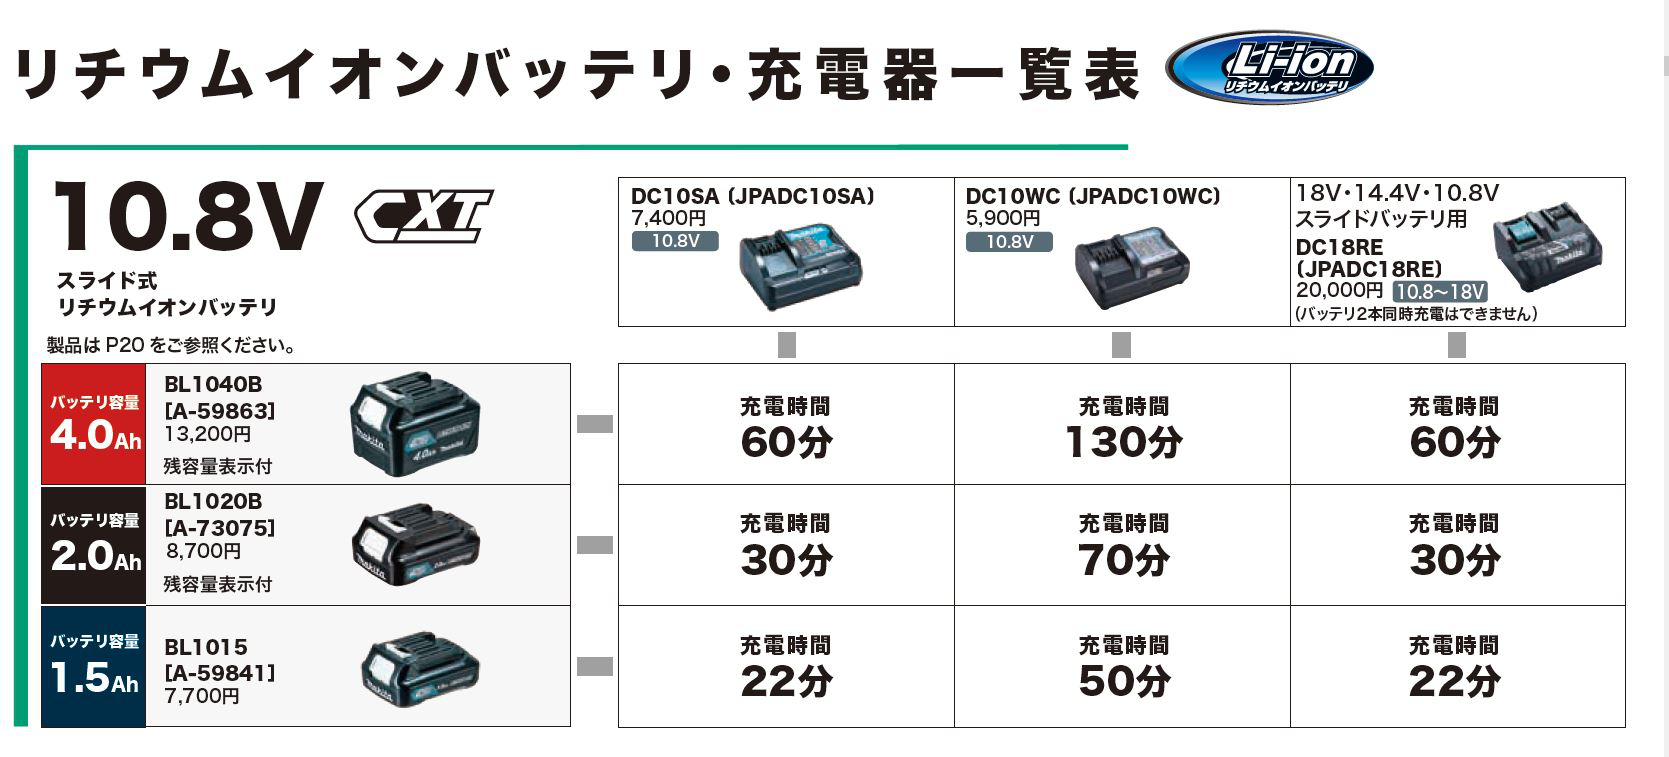 マキタ バッテリー 純正 10.8V BL1020B 日本仕様 正規品 A-73075